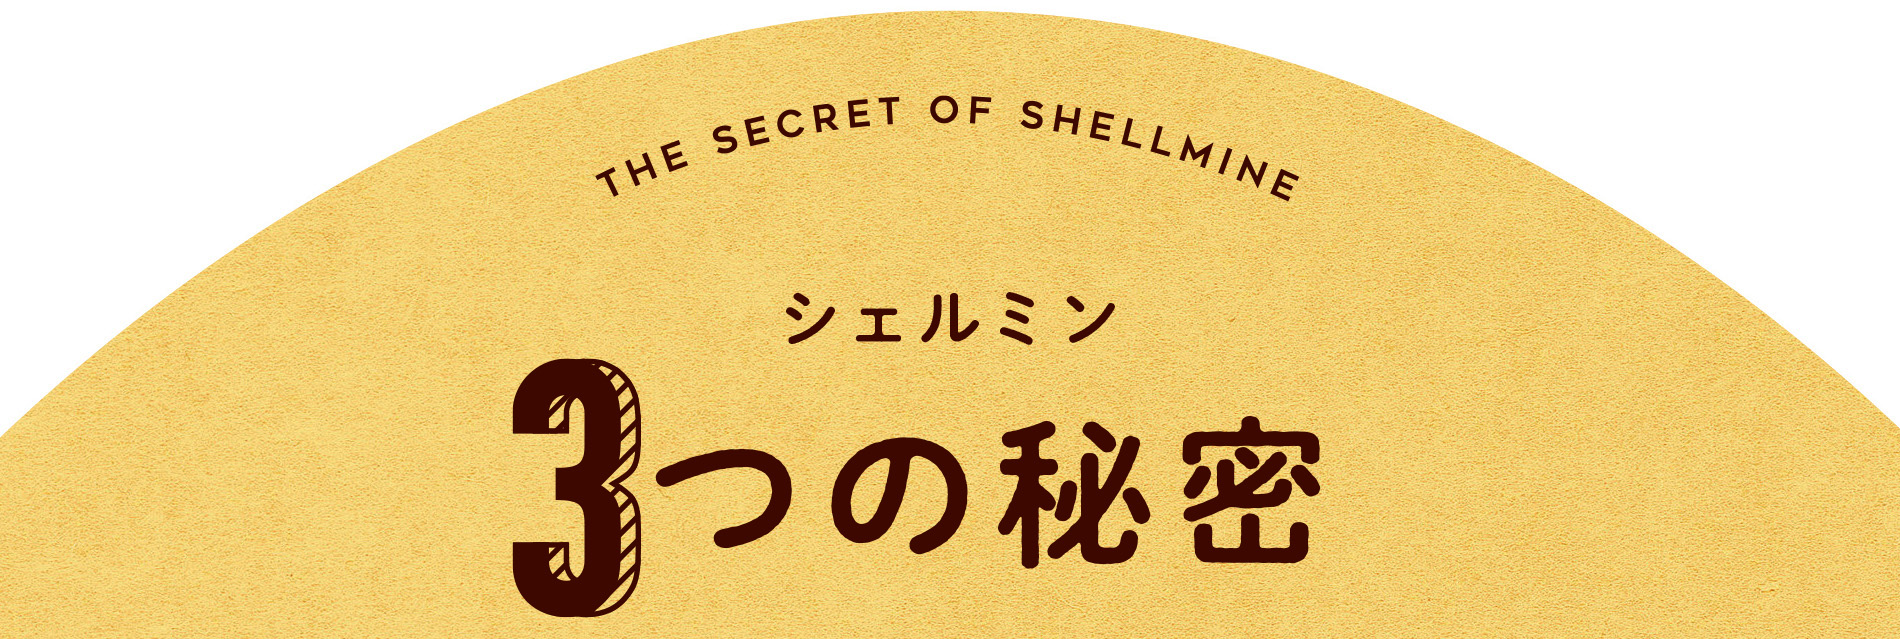 シェルミン3つの秘密